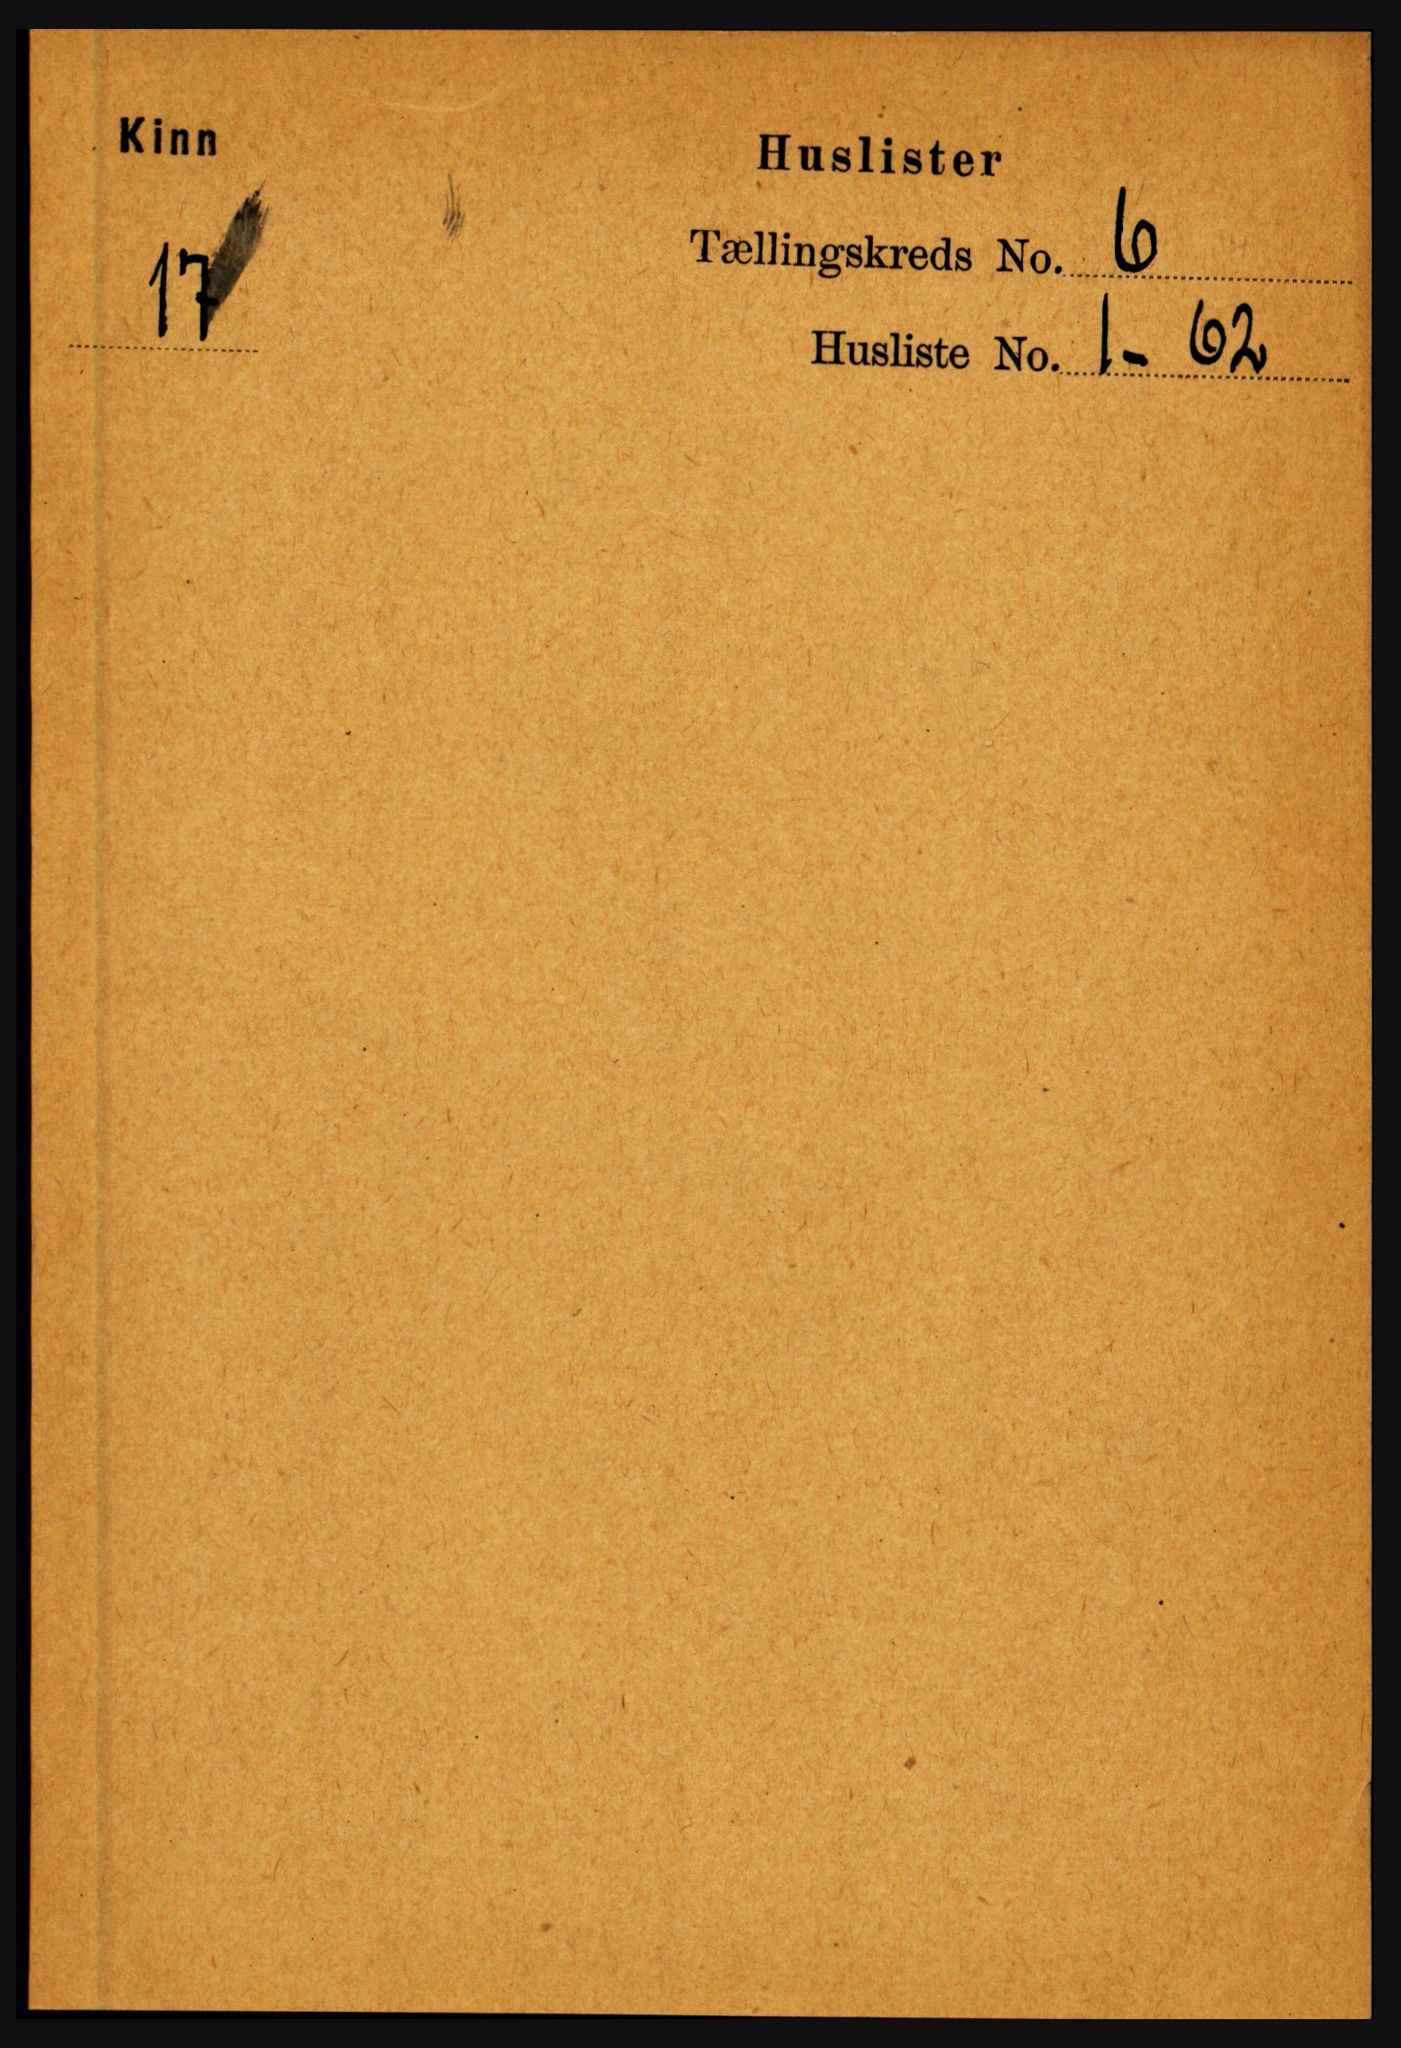 RA, Folketelling 1891 for 1437 Kinn herred, 1891, s. 2212